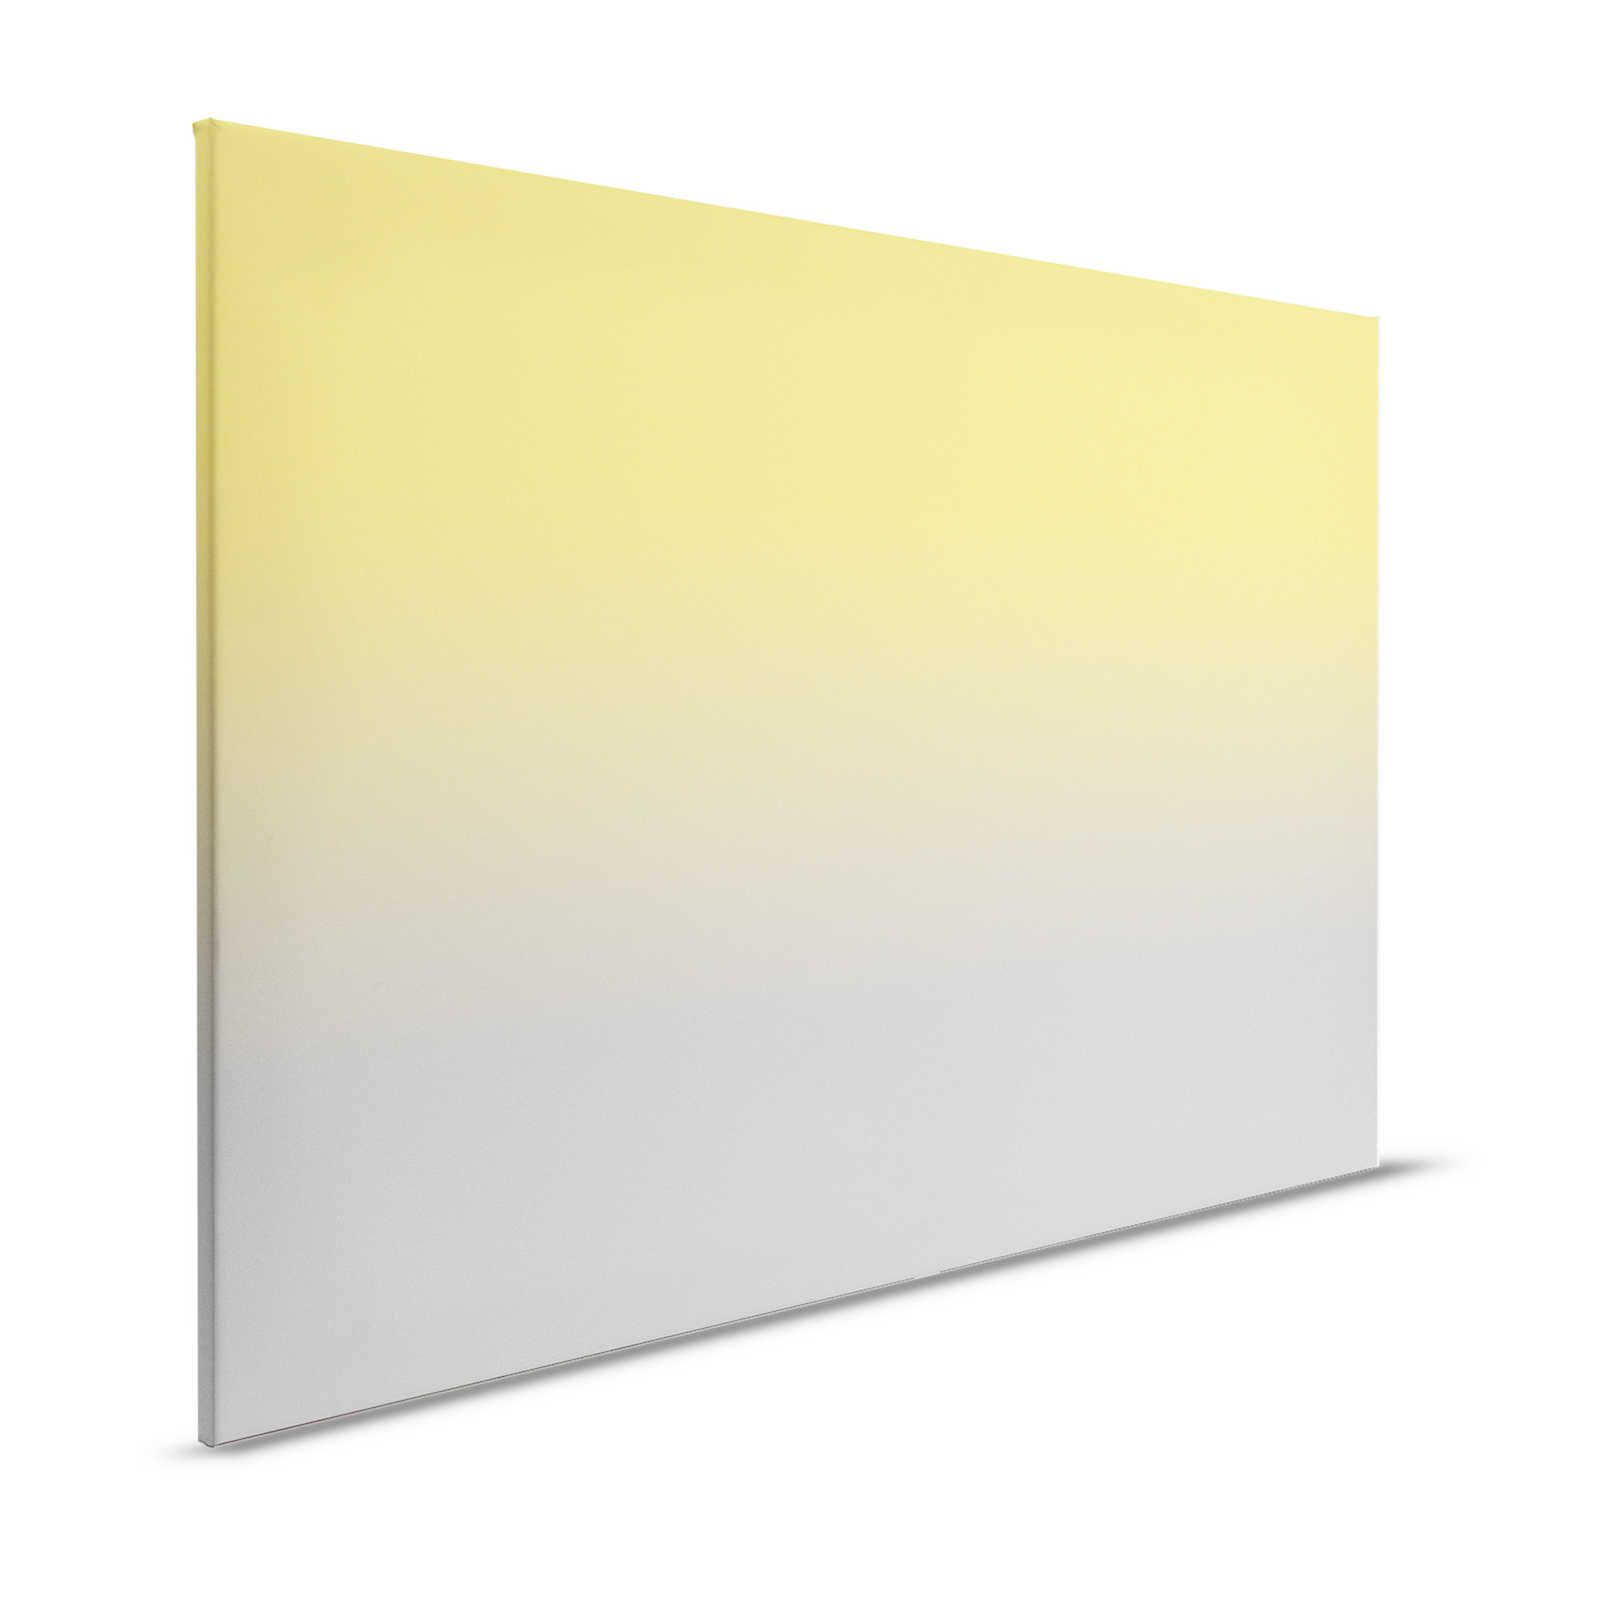 Kleurenstudio 1 - Canvas schilderij Geel & Grijs Trendy Kleuren Ombre Effect - 1.20 m x 0.80 m
